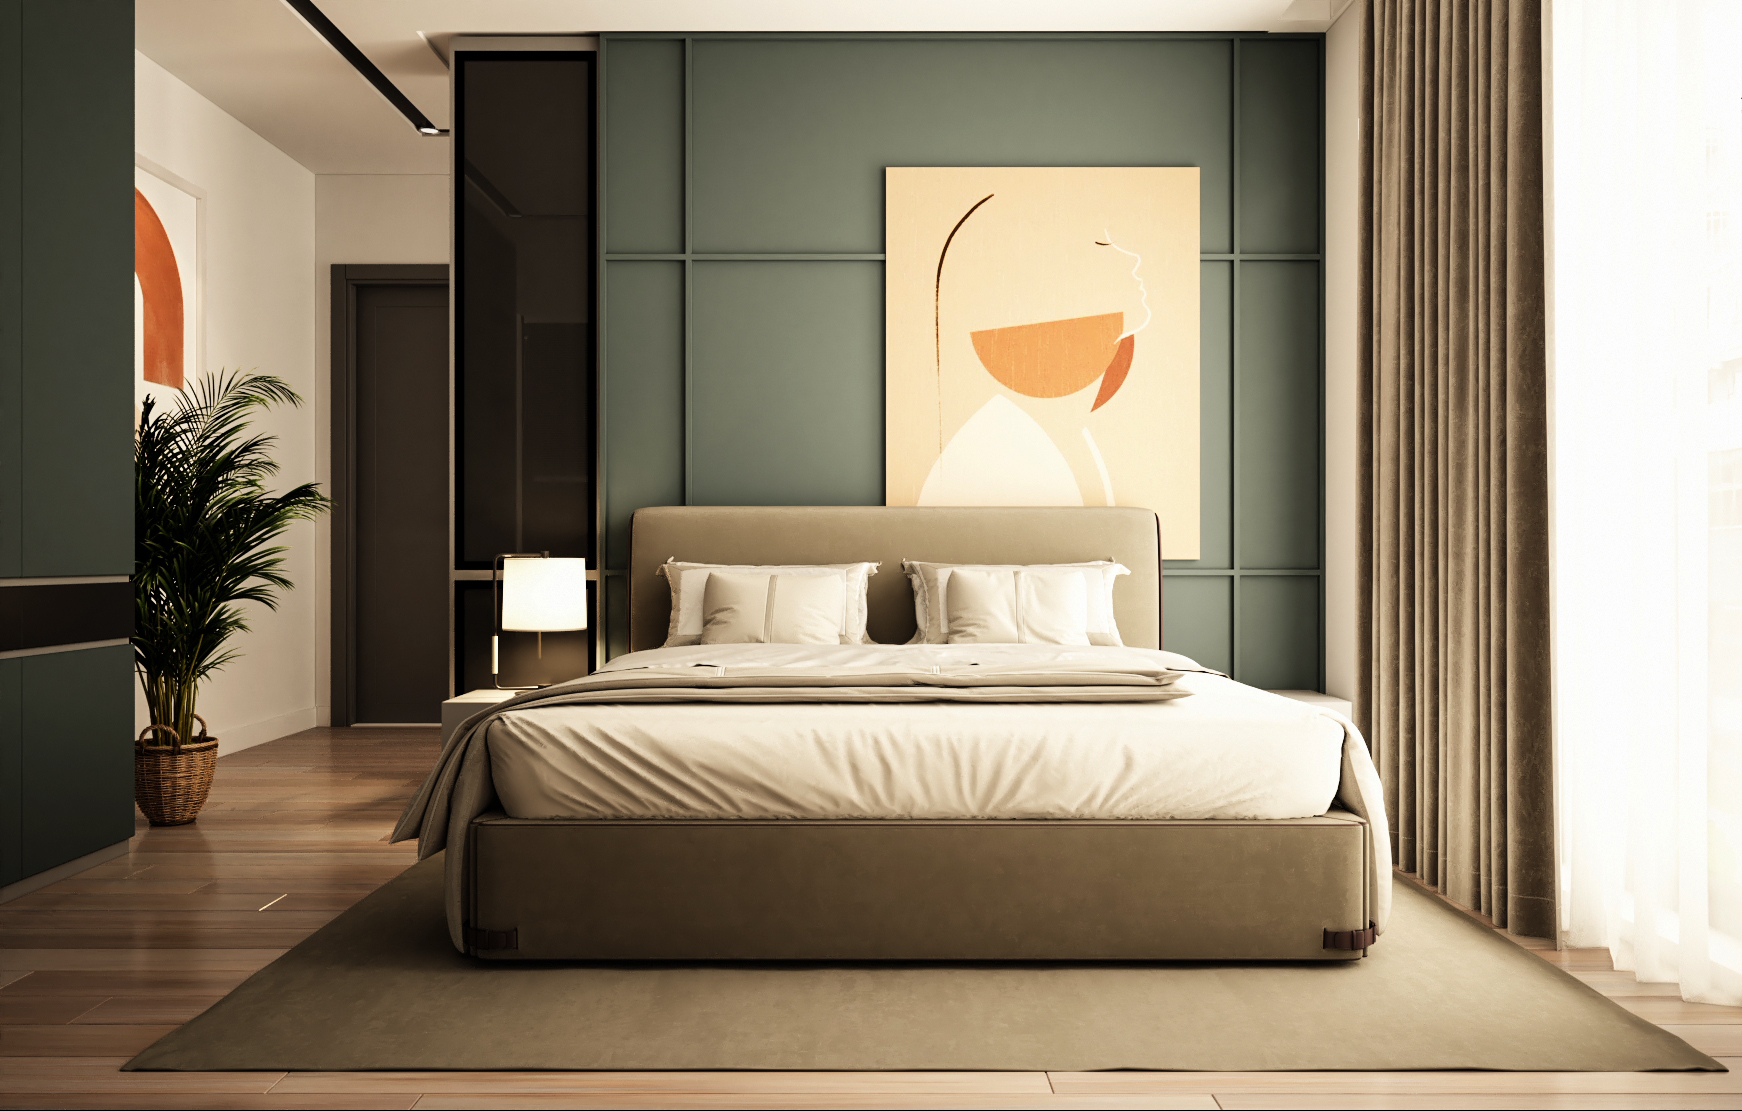 Thiết kế mẫu phòng ngủ 13m2 – Tây Hồ Residence – anh Long